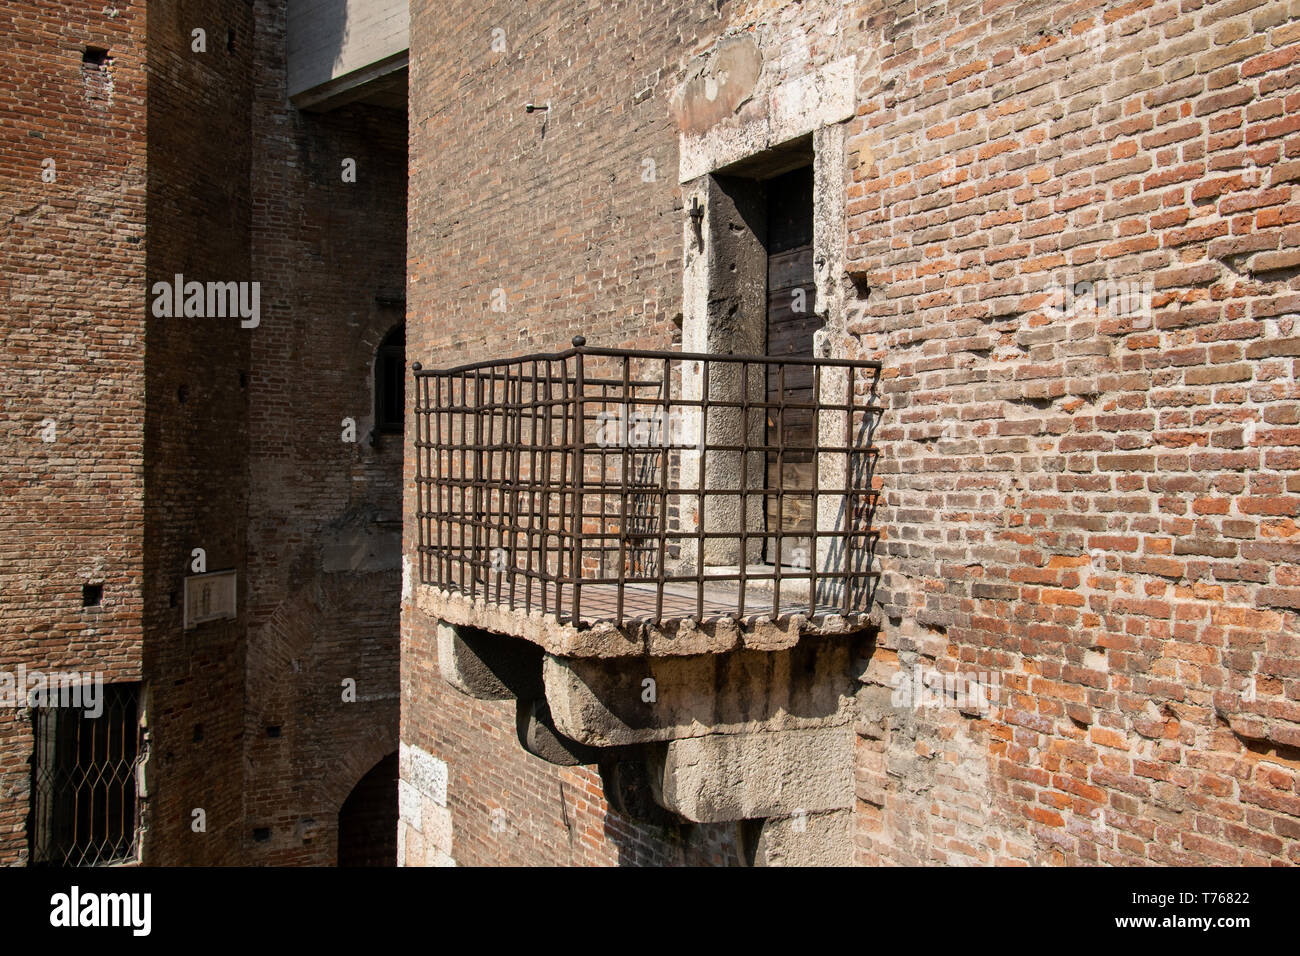 Balcon métallique fixée au mur du Castelvecchio, Verona, Italie Banque D'Images